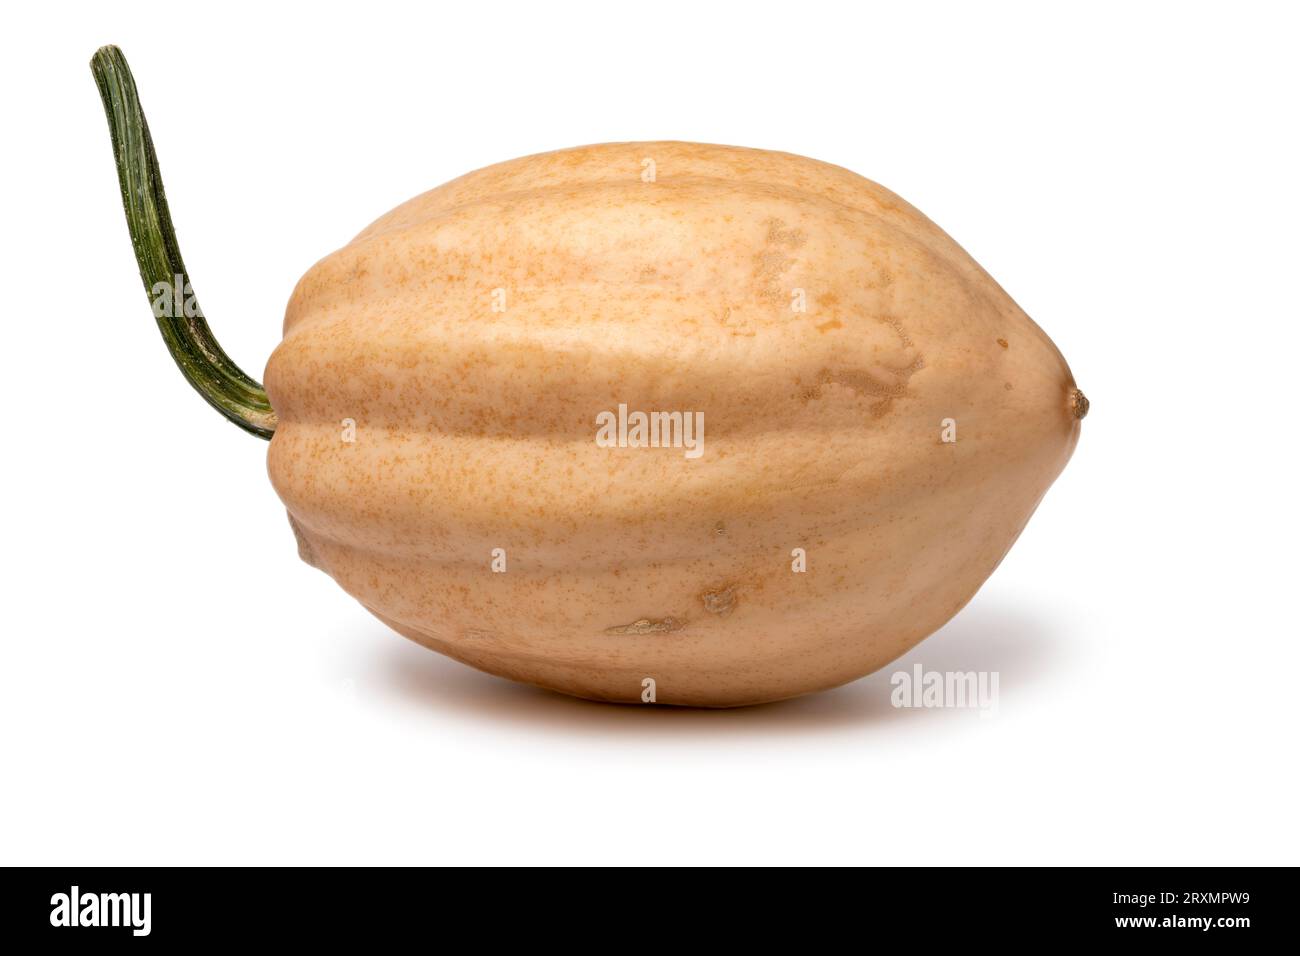 Single whole fresh Baked potato Acorn Squash isolated on white background close up Stock Photo